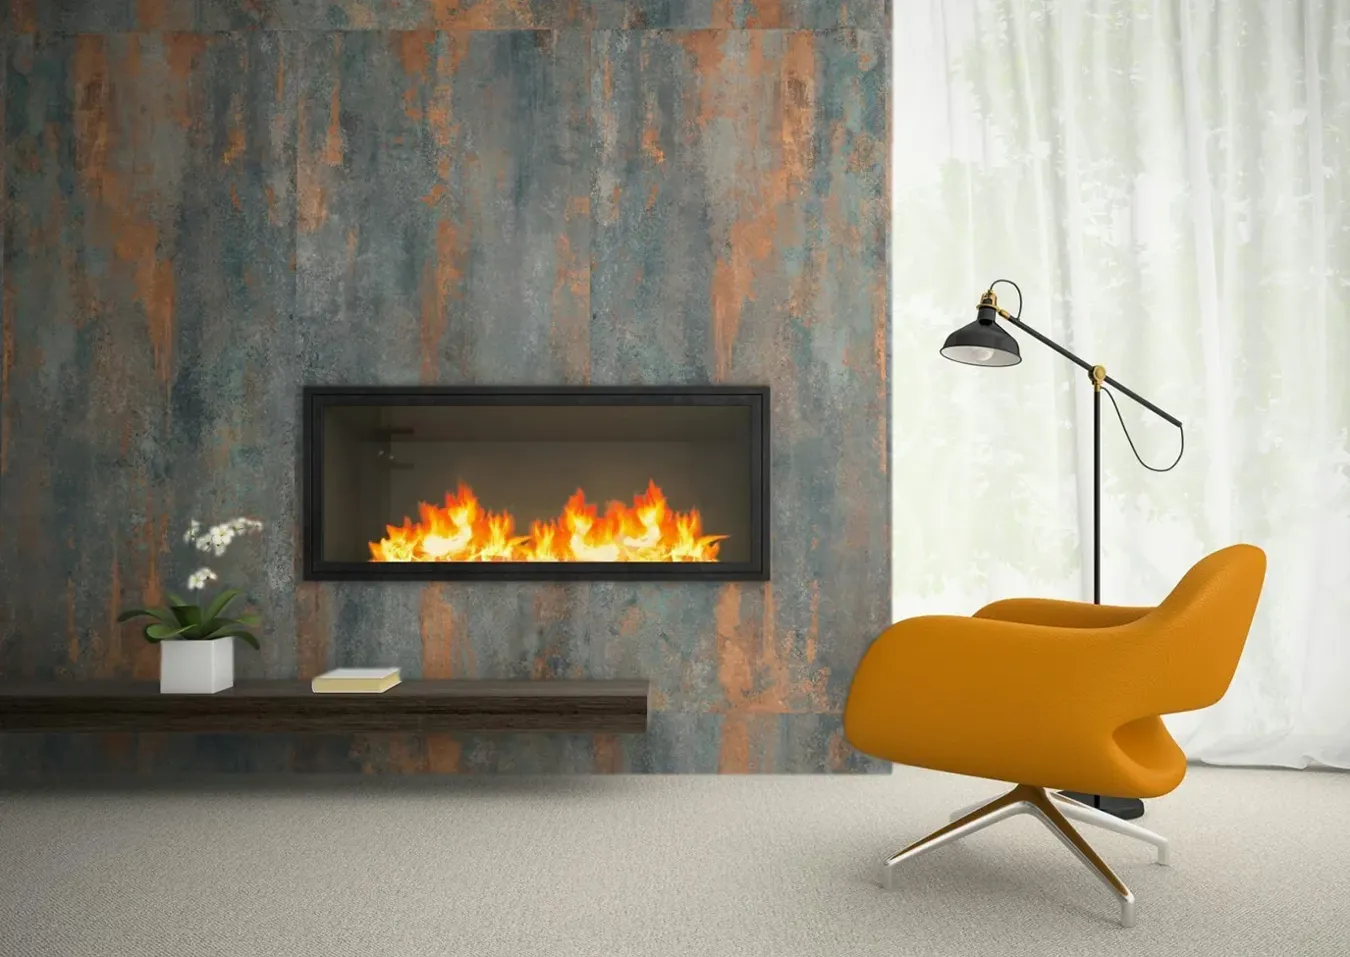 Salon chaleureux avec cheminée en carreaux effet métal Precious Gold, fauteuil jaune moderne et lampe sur pied élégante